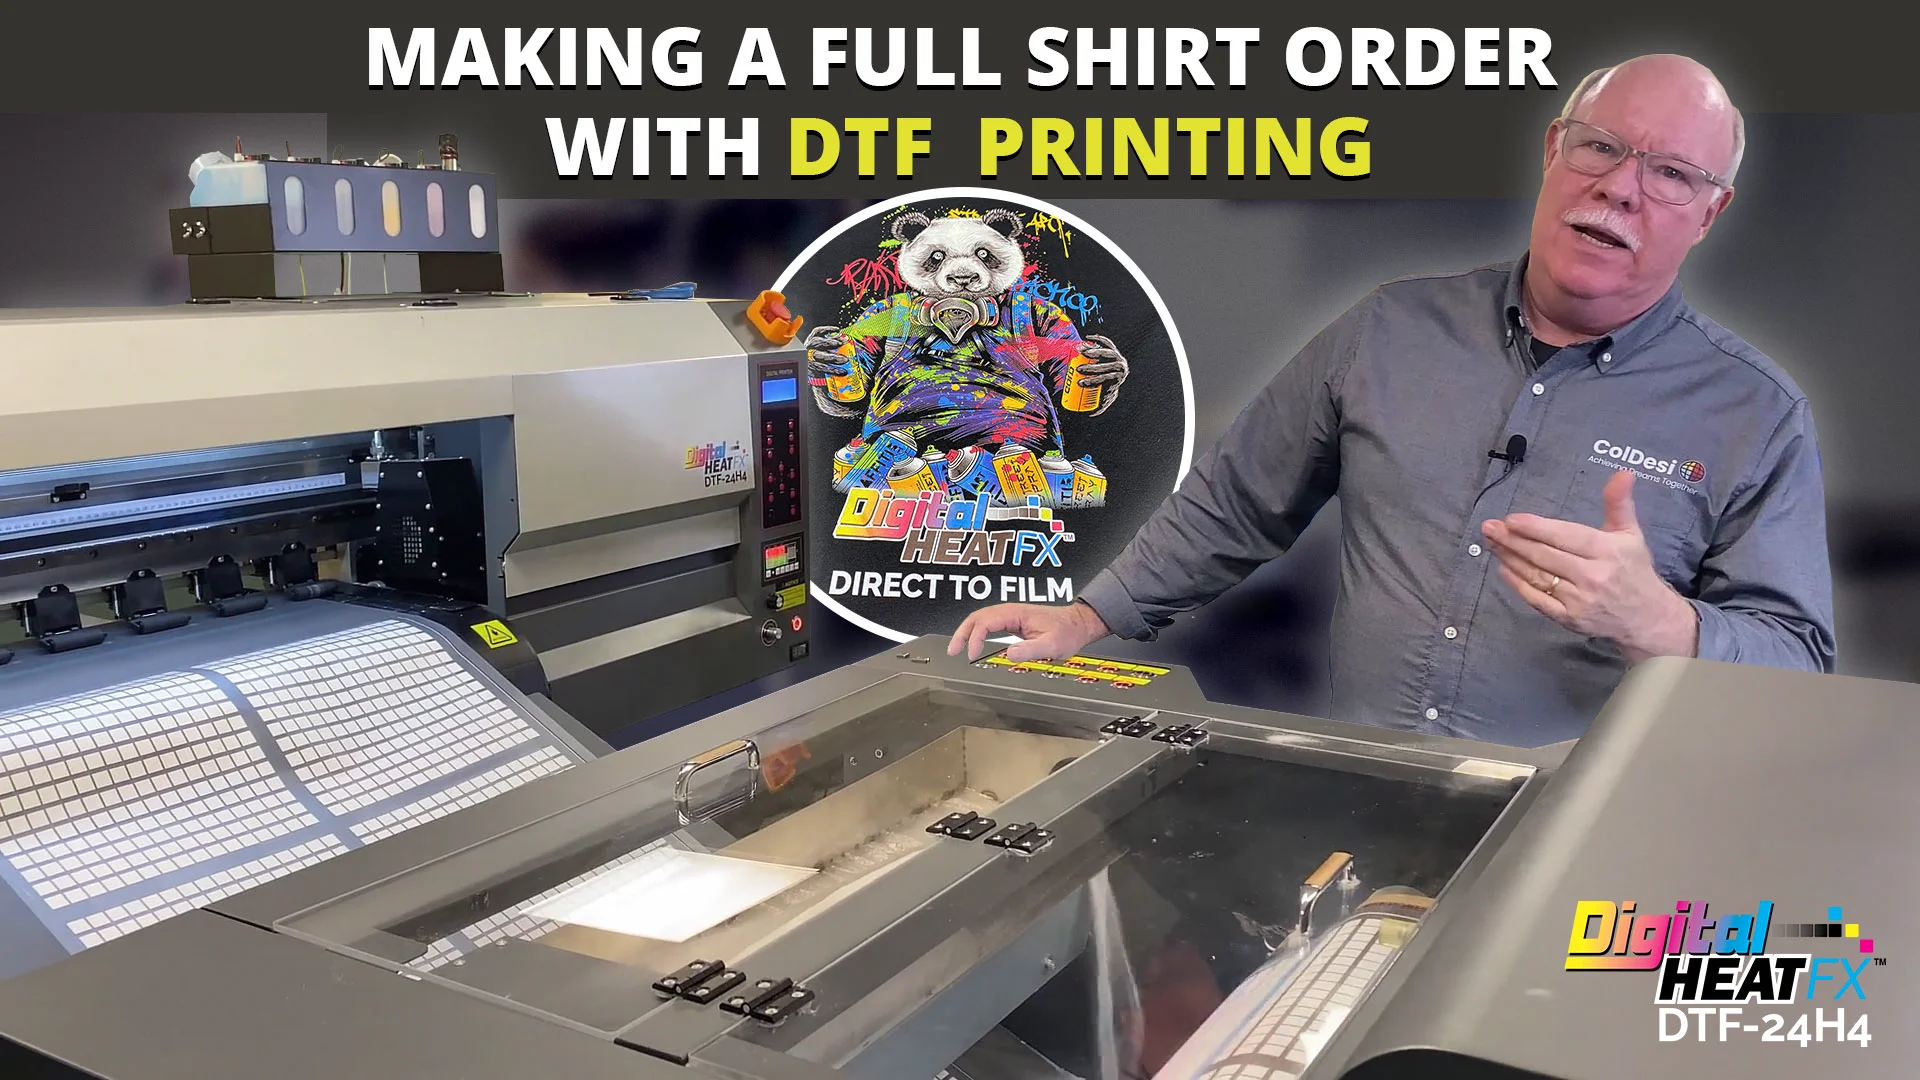 Direct to Film Printer vs. DTG Printer - ColDesi